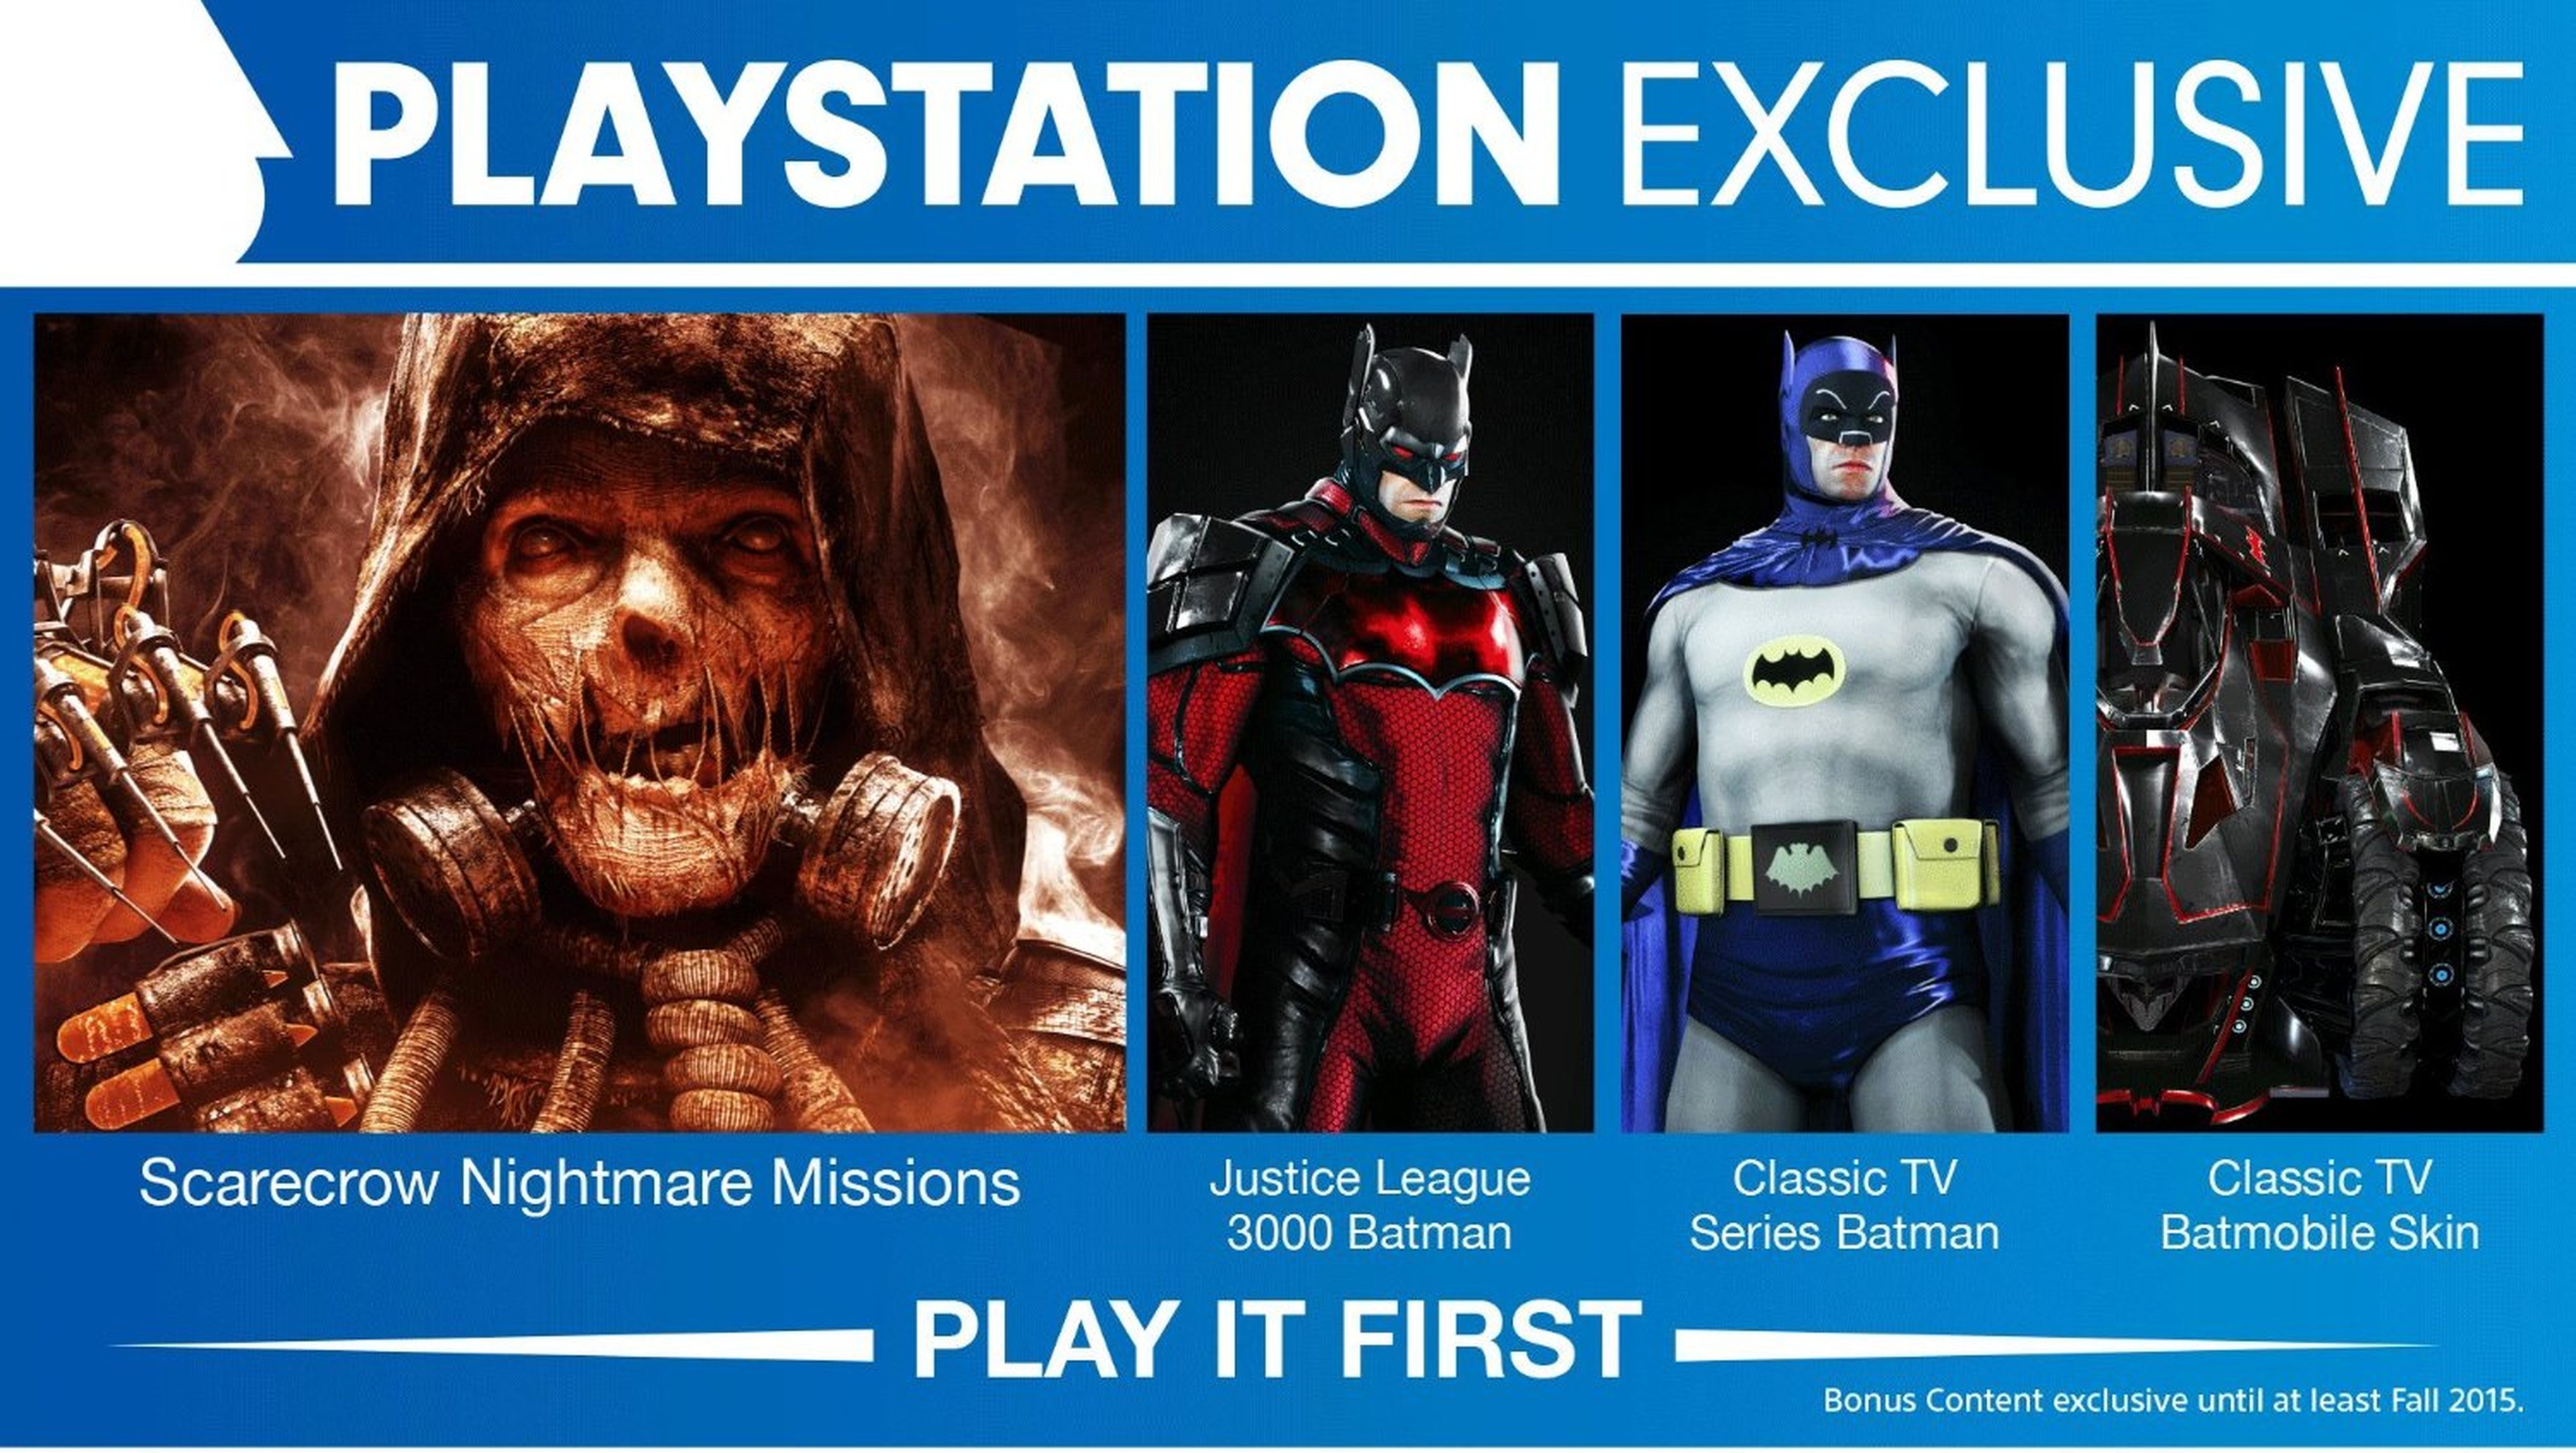 Batman Arkham Knight detalla sus contenidos exclusivos temporales en PS4